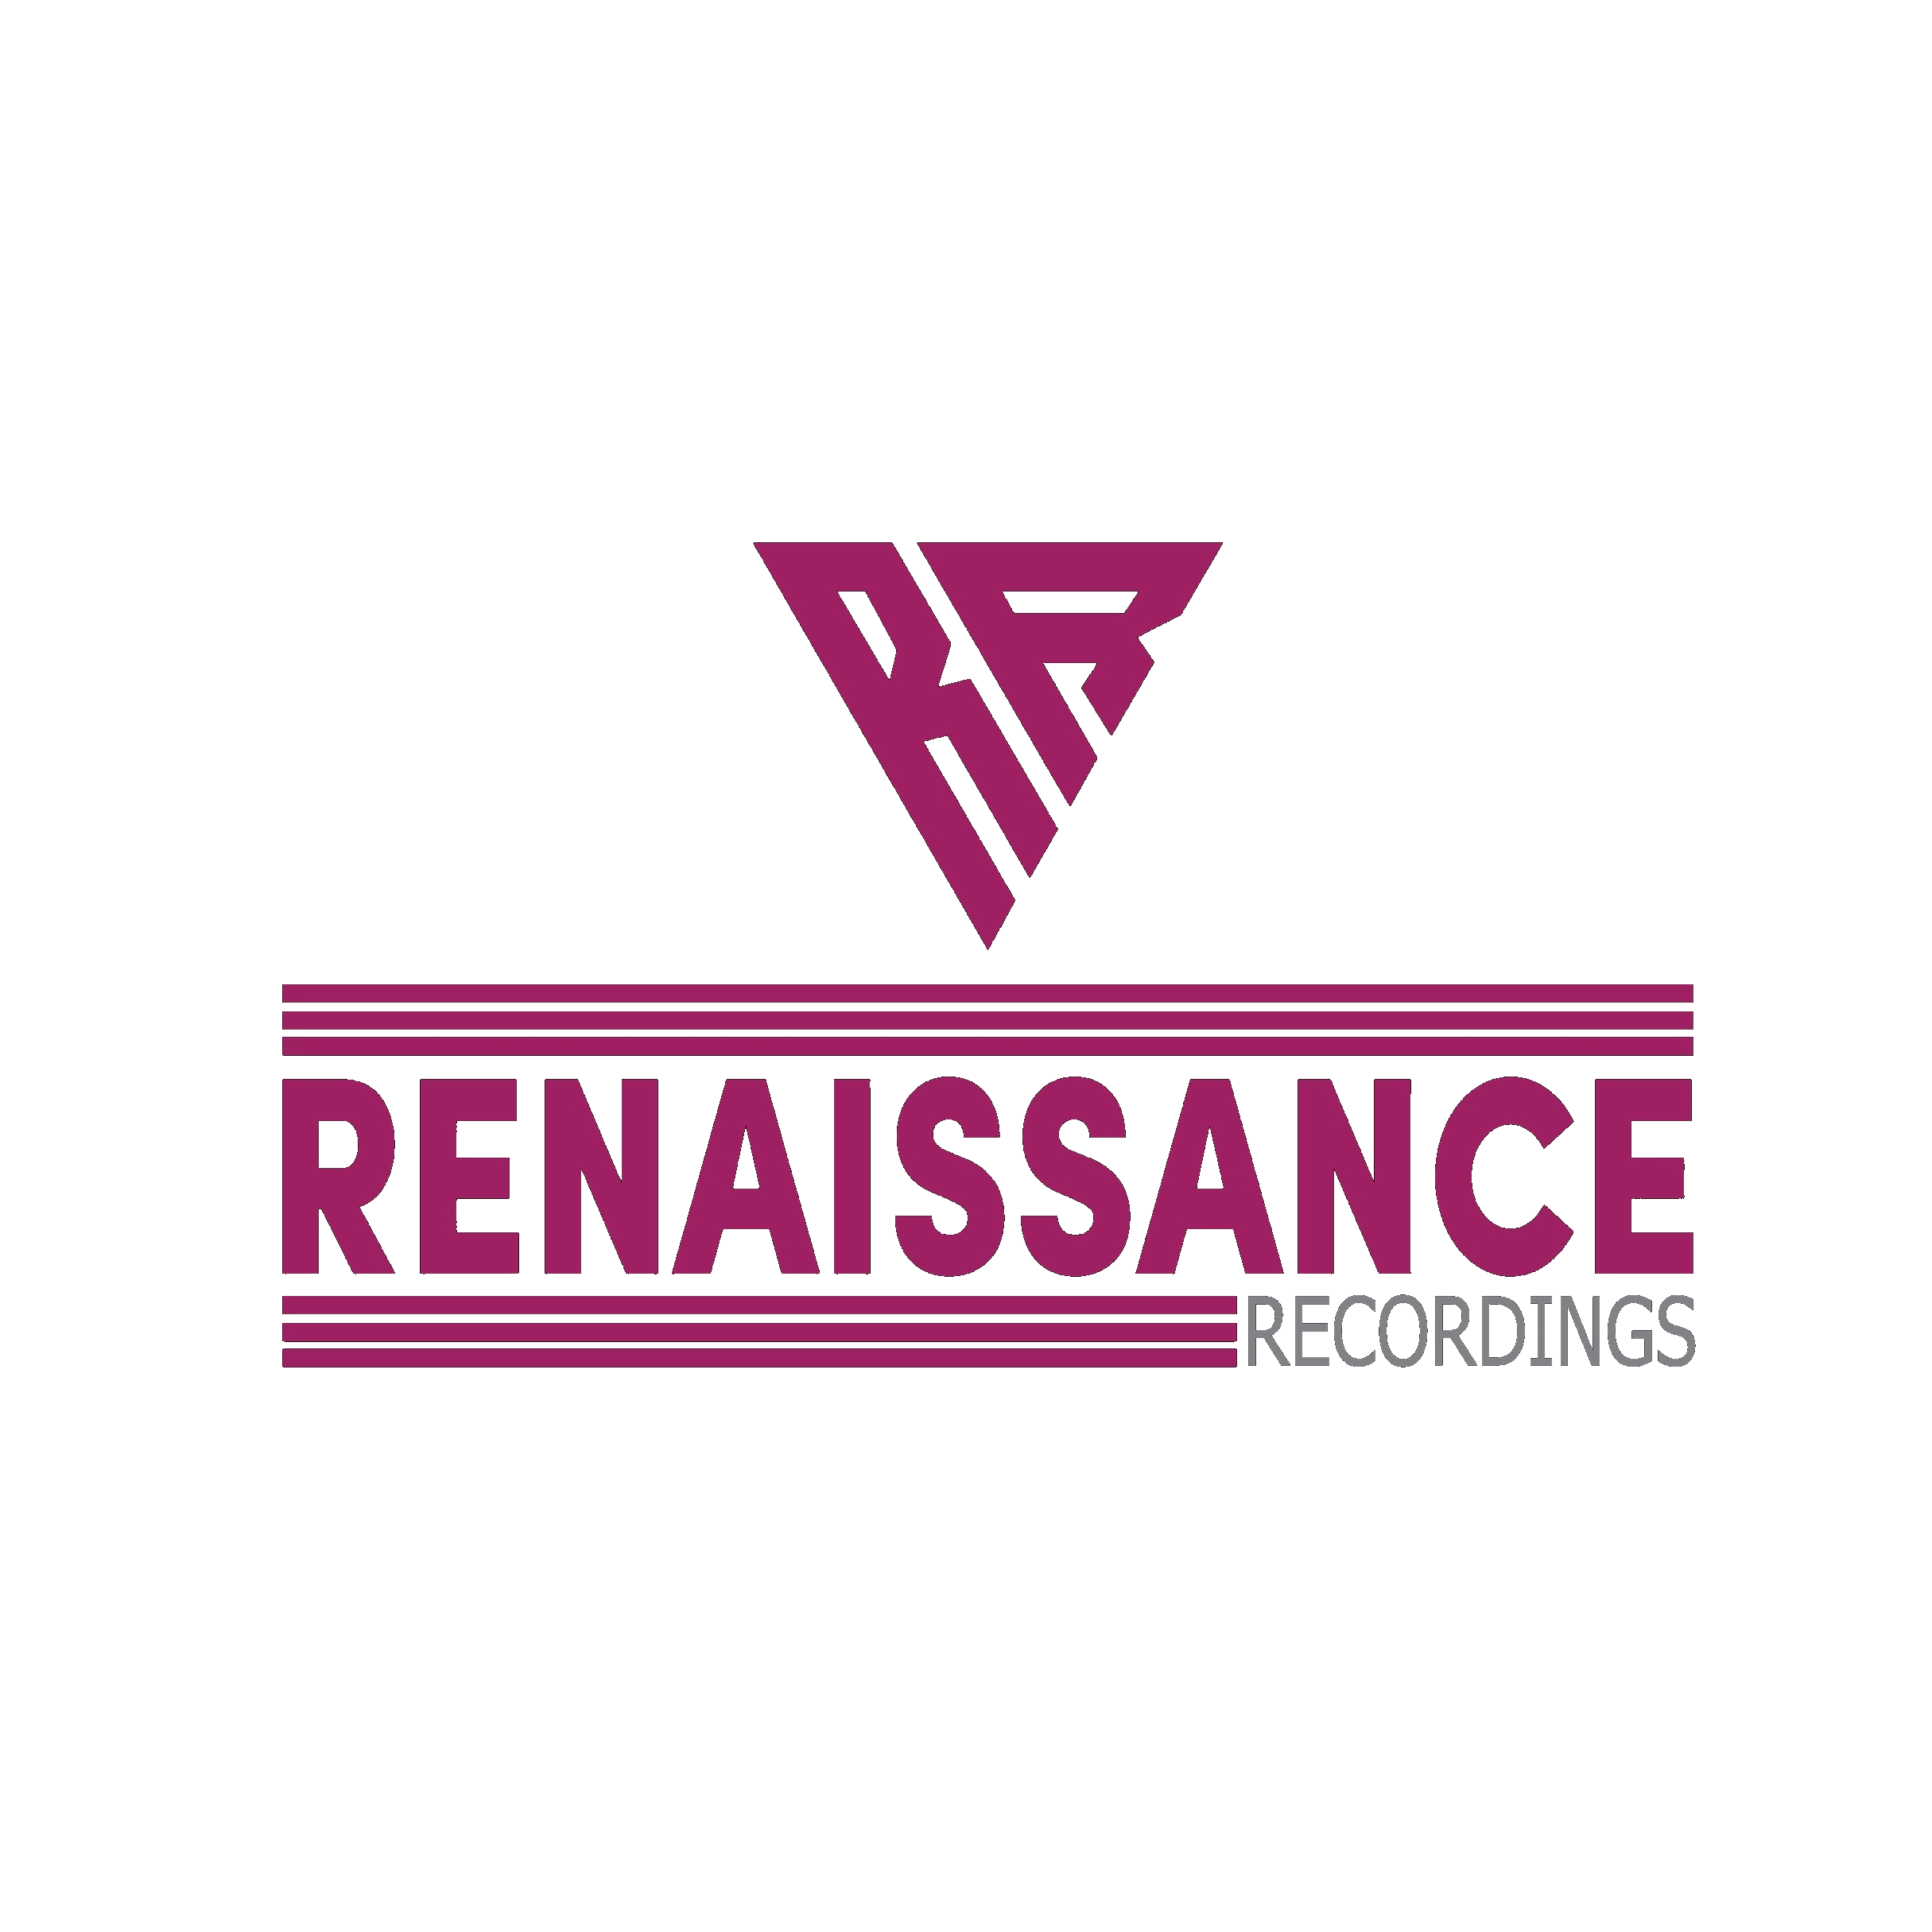 Renaissance Recordings